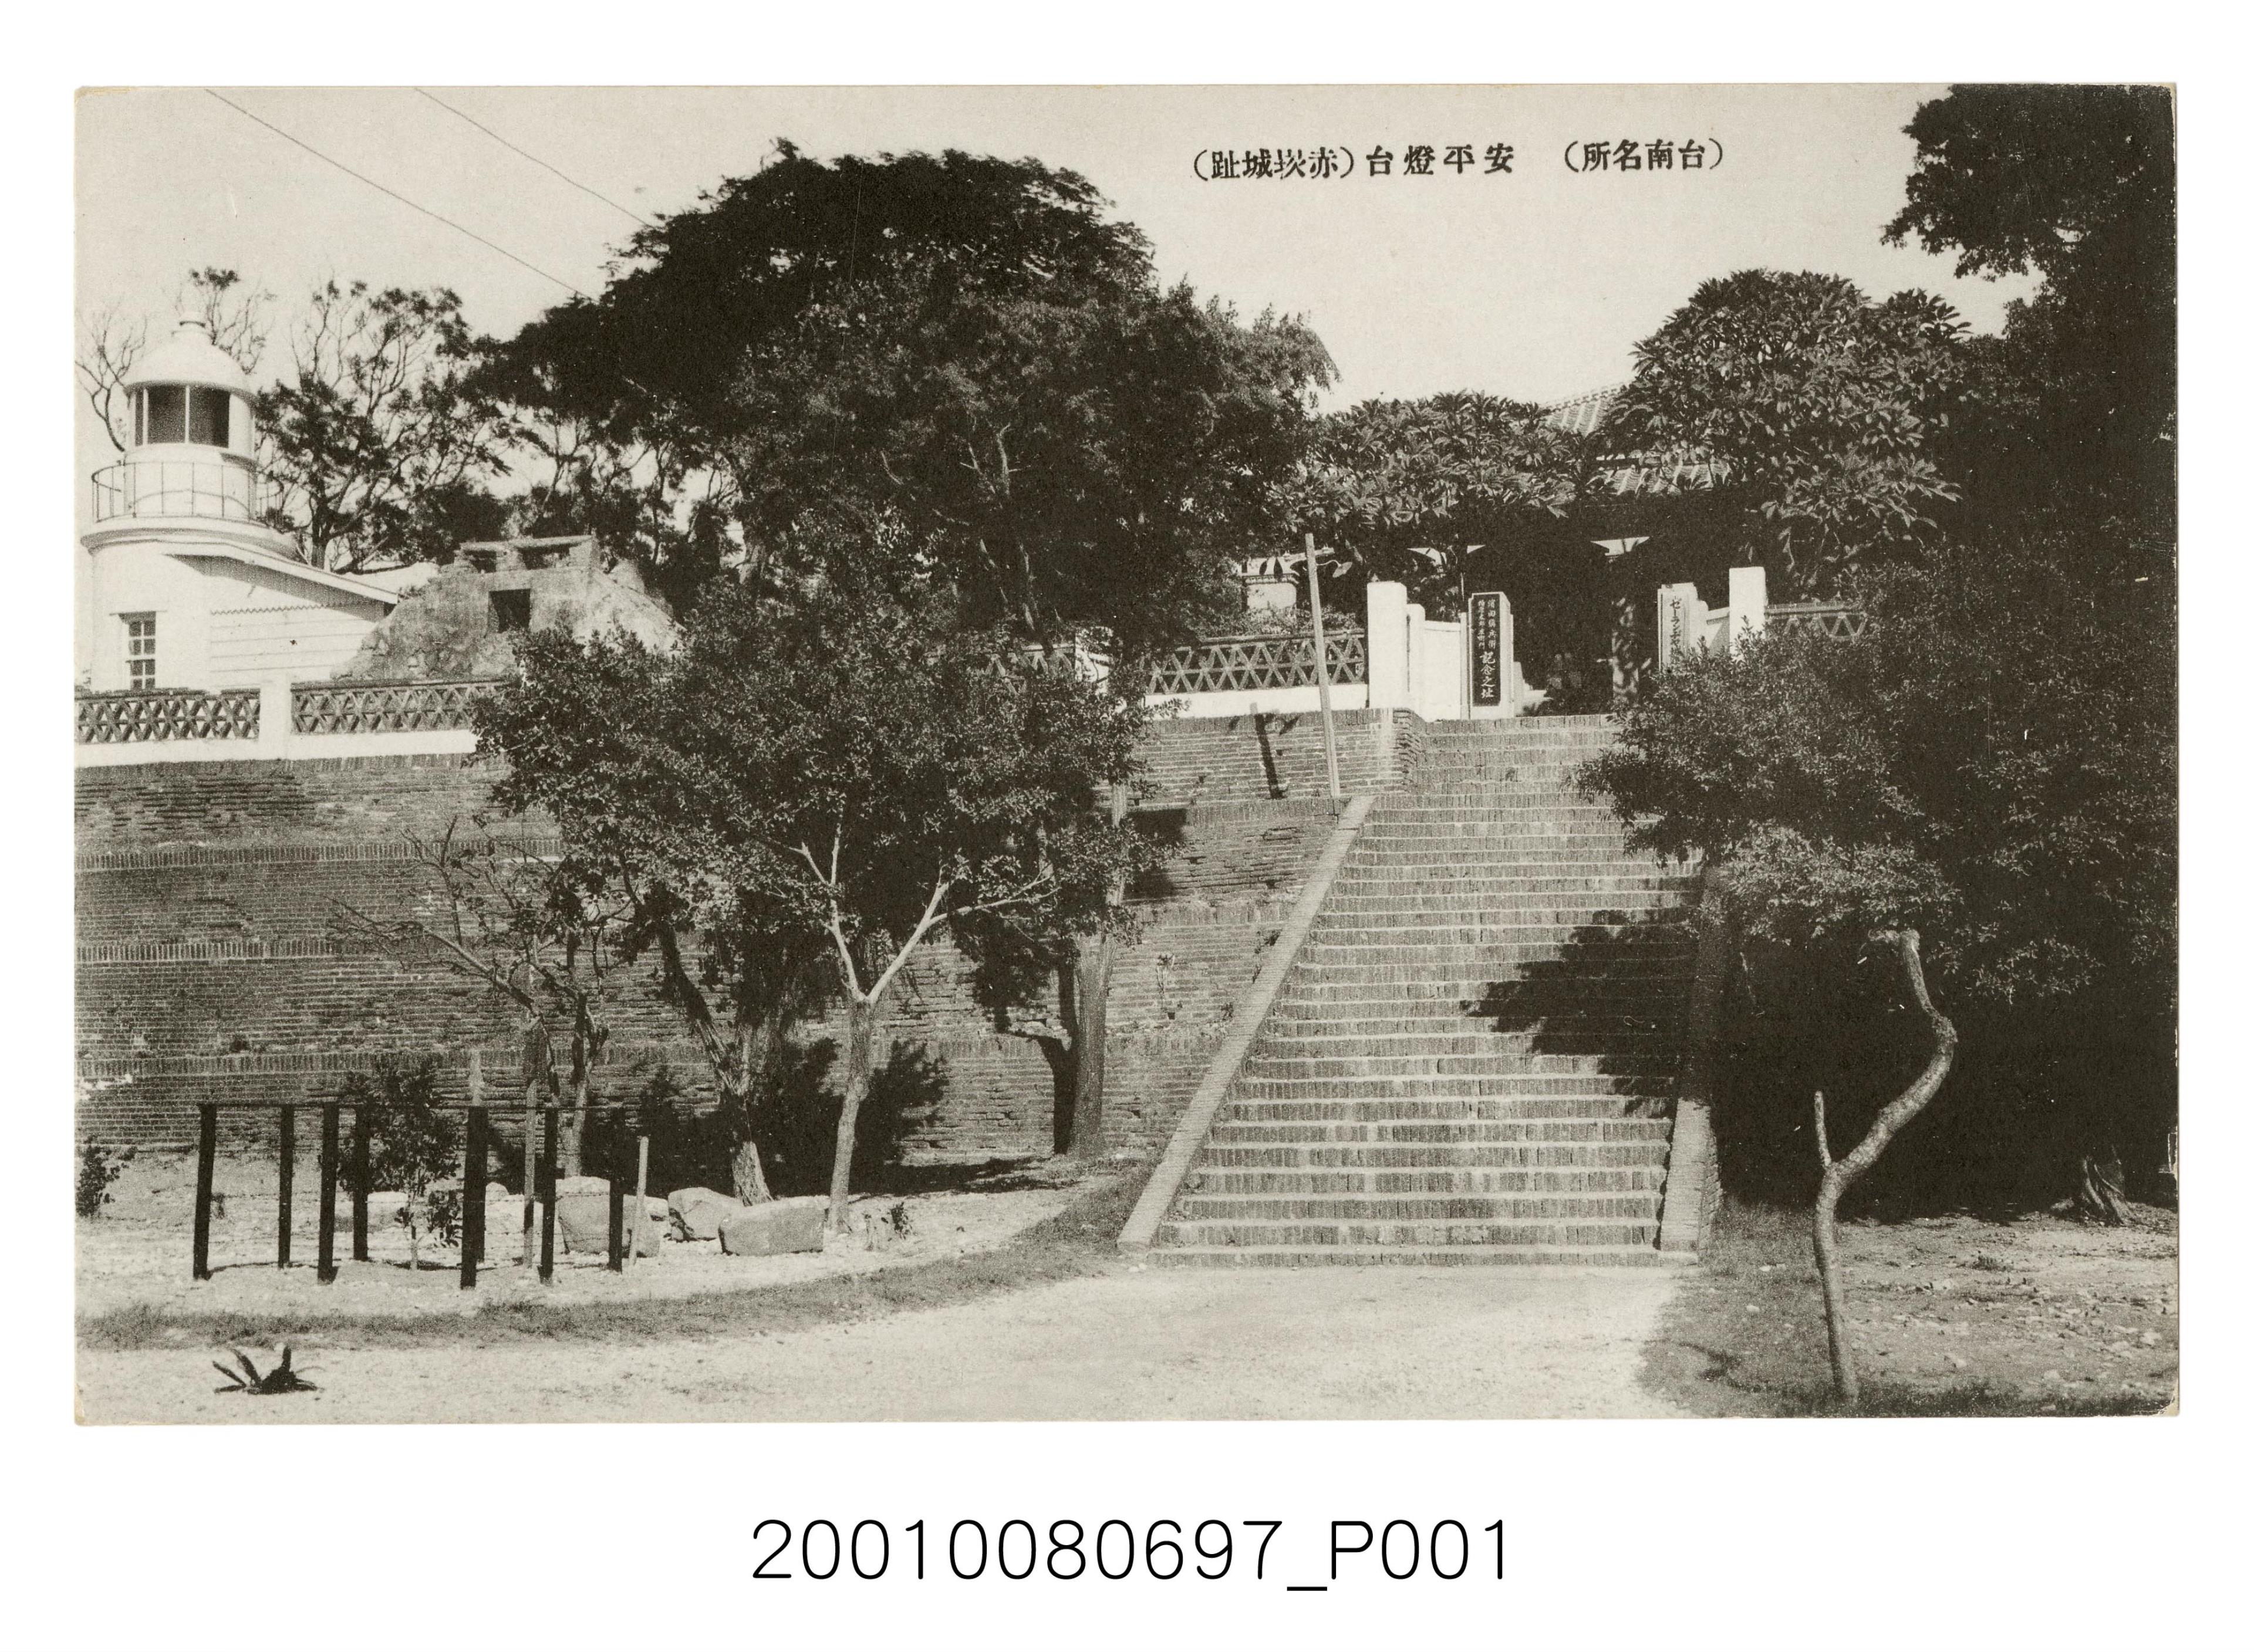 臺南名所安平燈塔 (共2張)